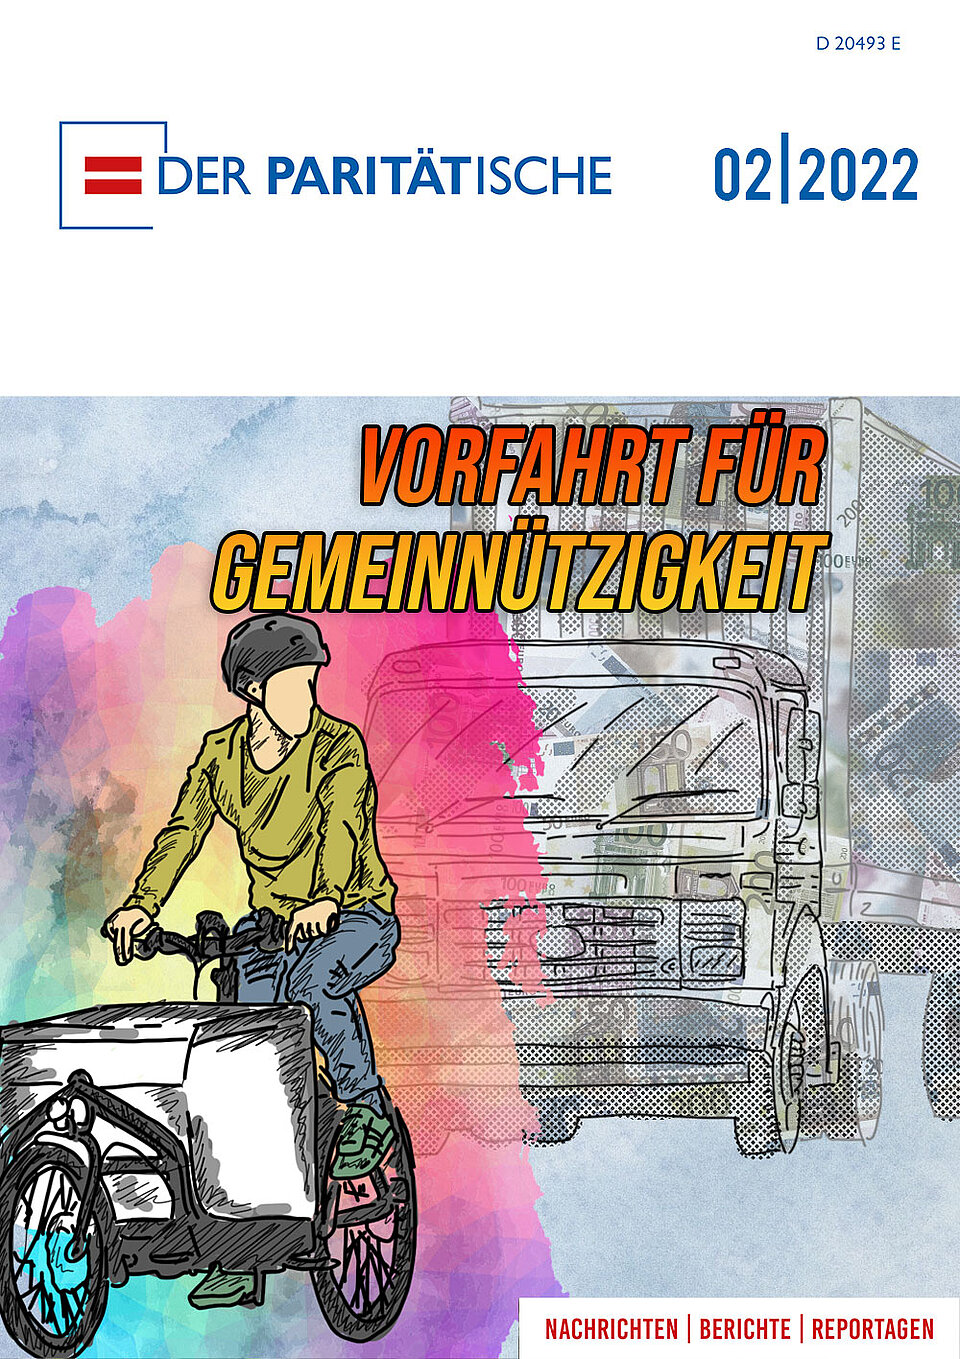 Ein Magazicover, auf dem seht "Der Paritätische 02/2022" und "Vorfahrt für Gemeinnützigkeit" und dazu eine Straßeszene: Jemand fährt ein Lastenrand, dahinter ein riesiger LKW, der mit Geldscheinen bedruckt ist. 